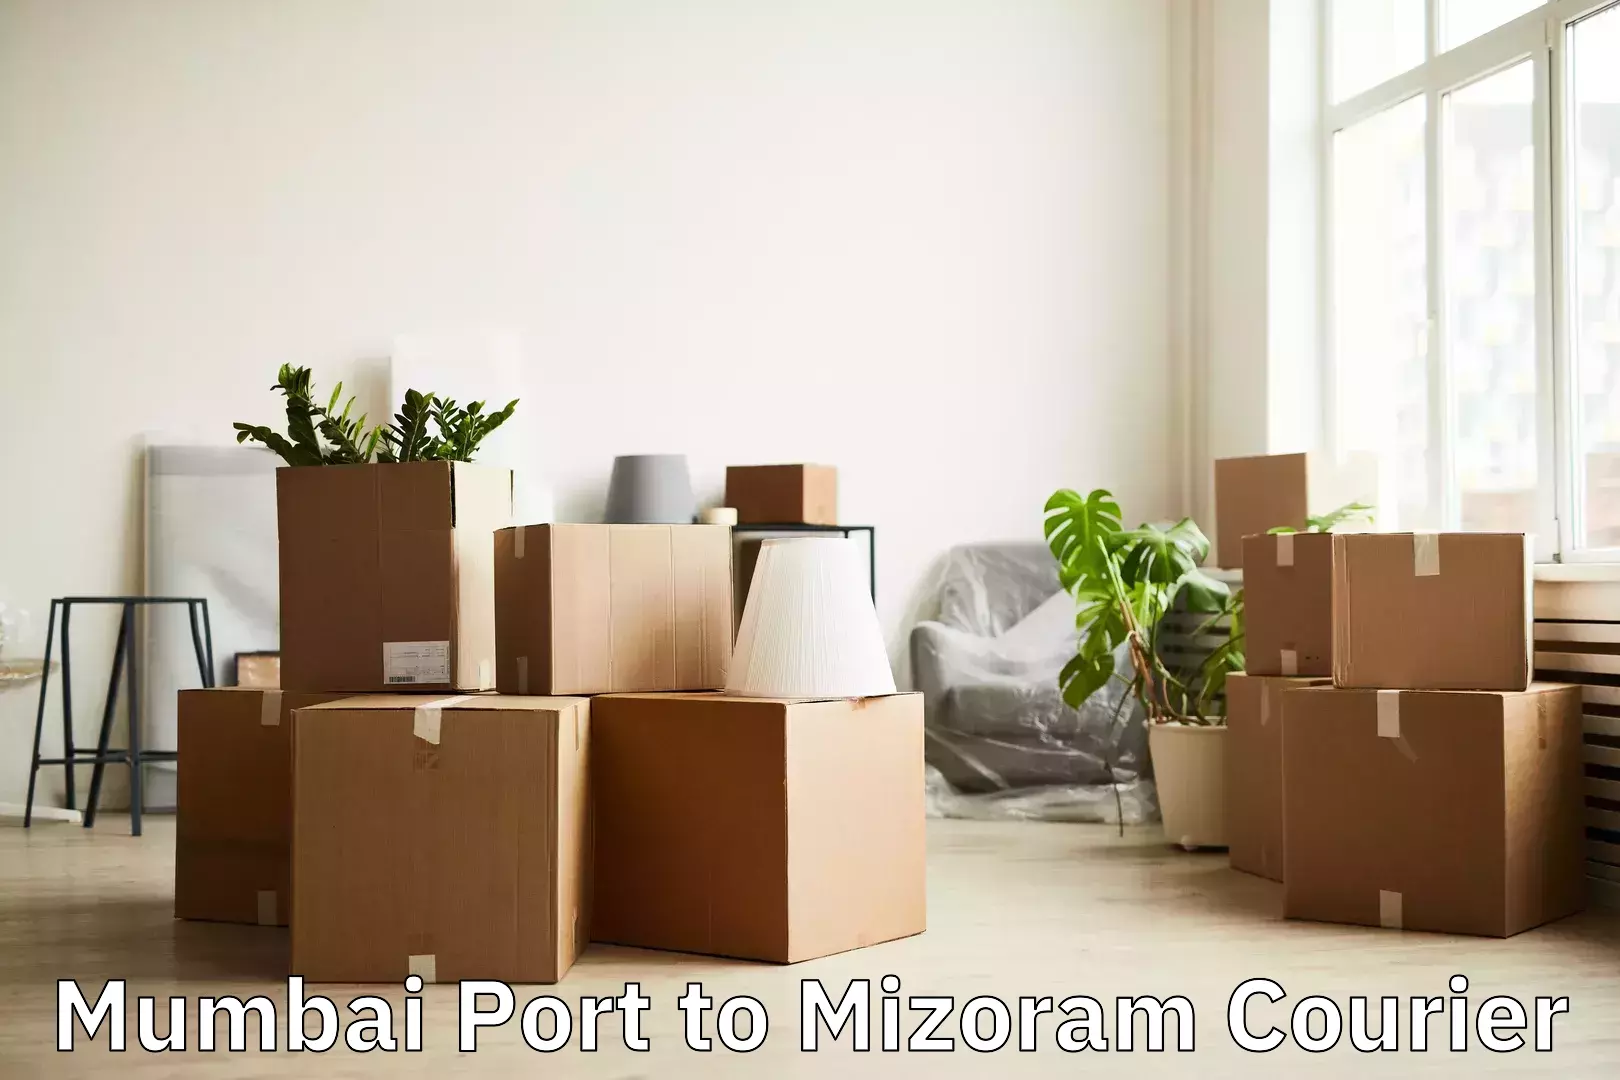 Luggage delivery app Mumbai Port to Mizoram